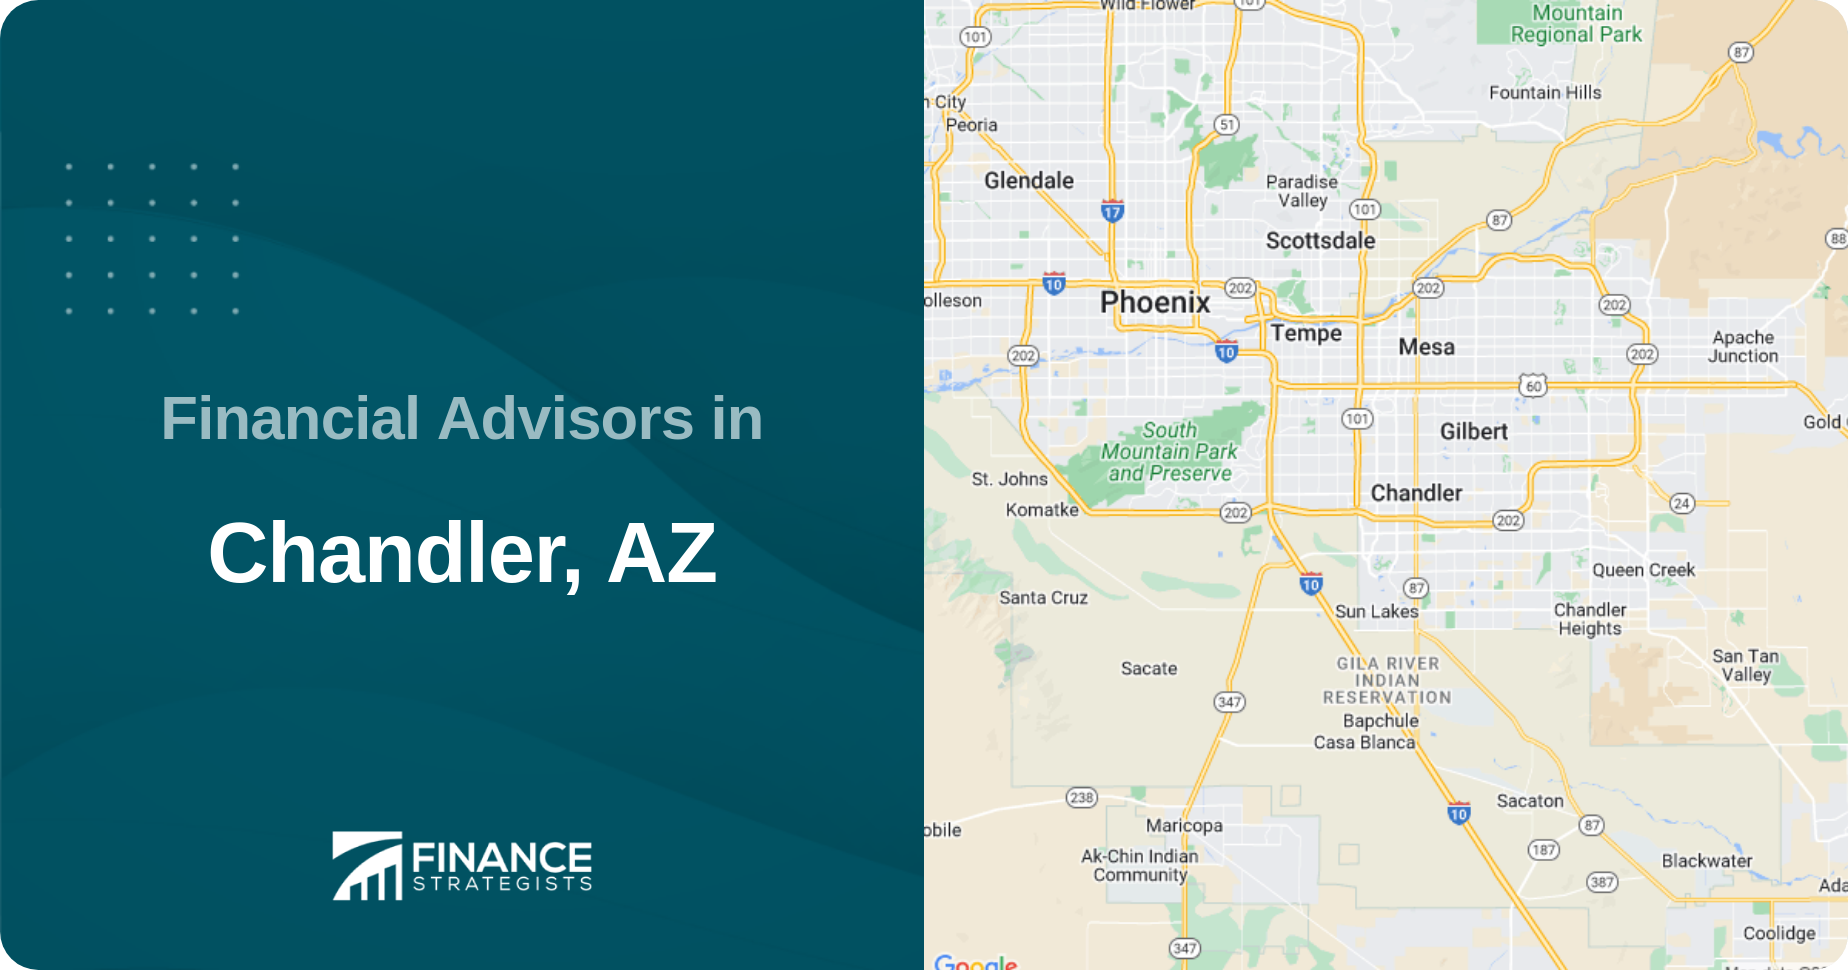 Financial Advisors in Chandler, AZ